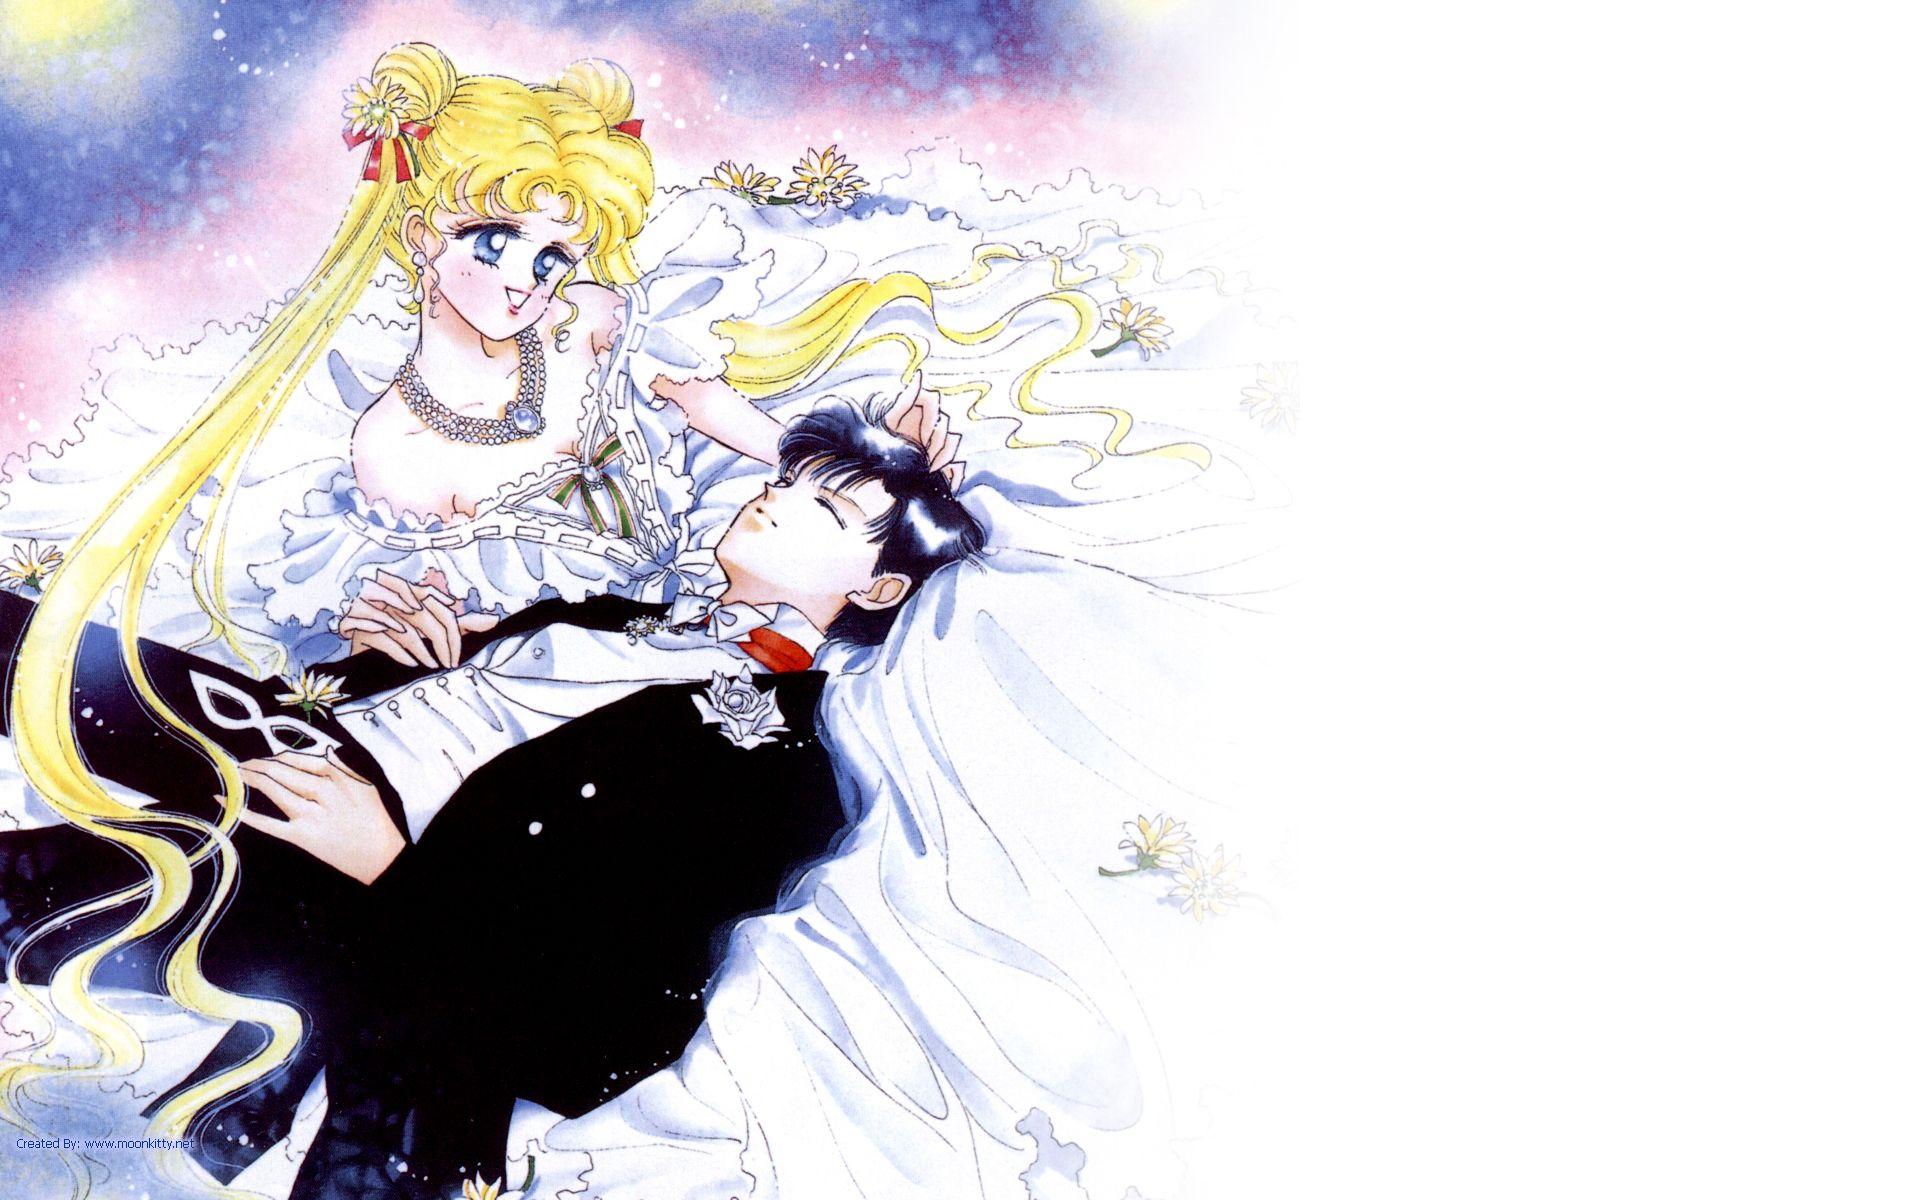 moonkitty.net: Sailor Moon Wallpaper Widescreen